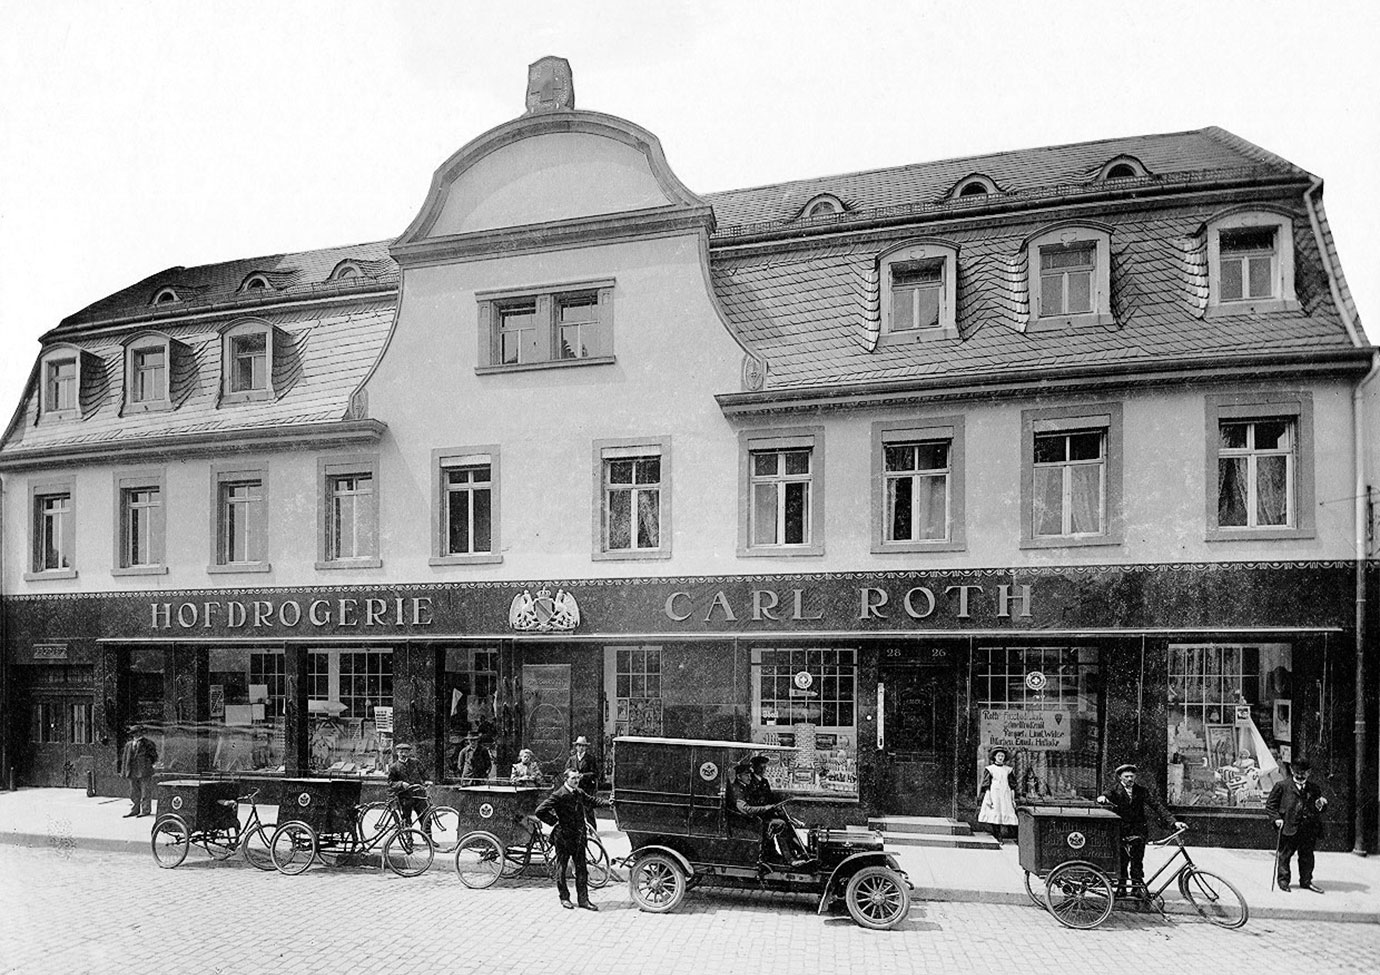 Carl-Roth-Hofdrogerie-1908_1380px.jpg